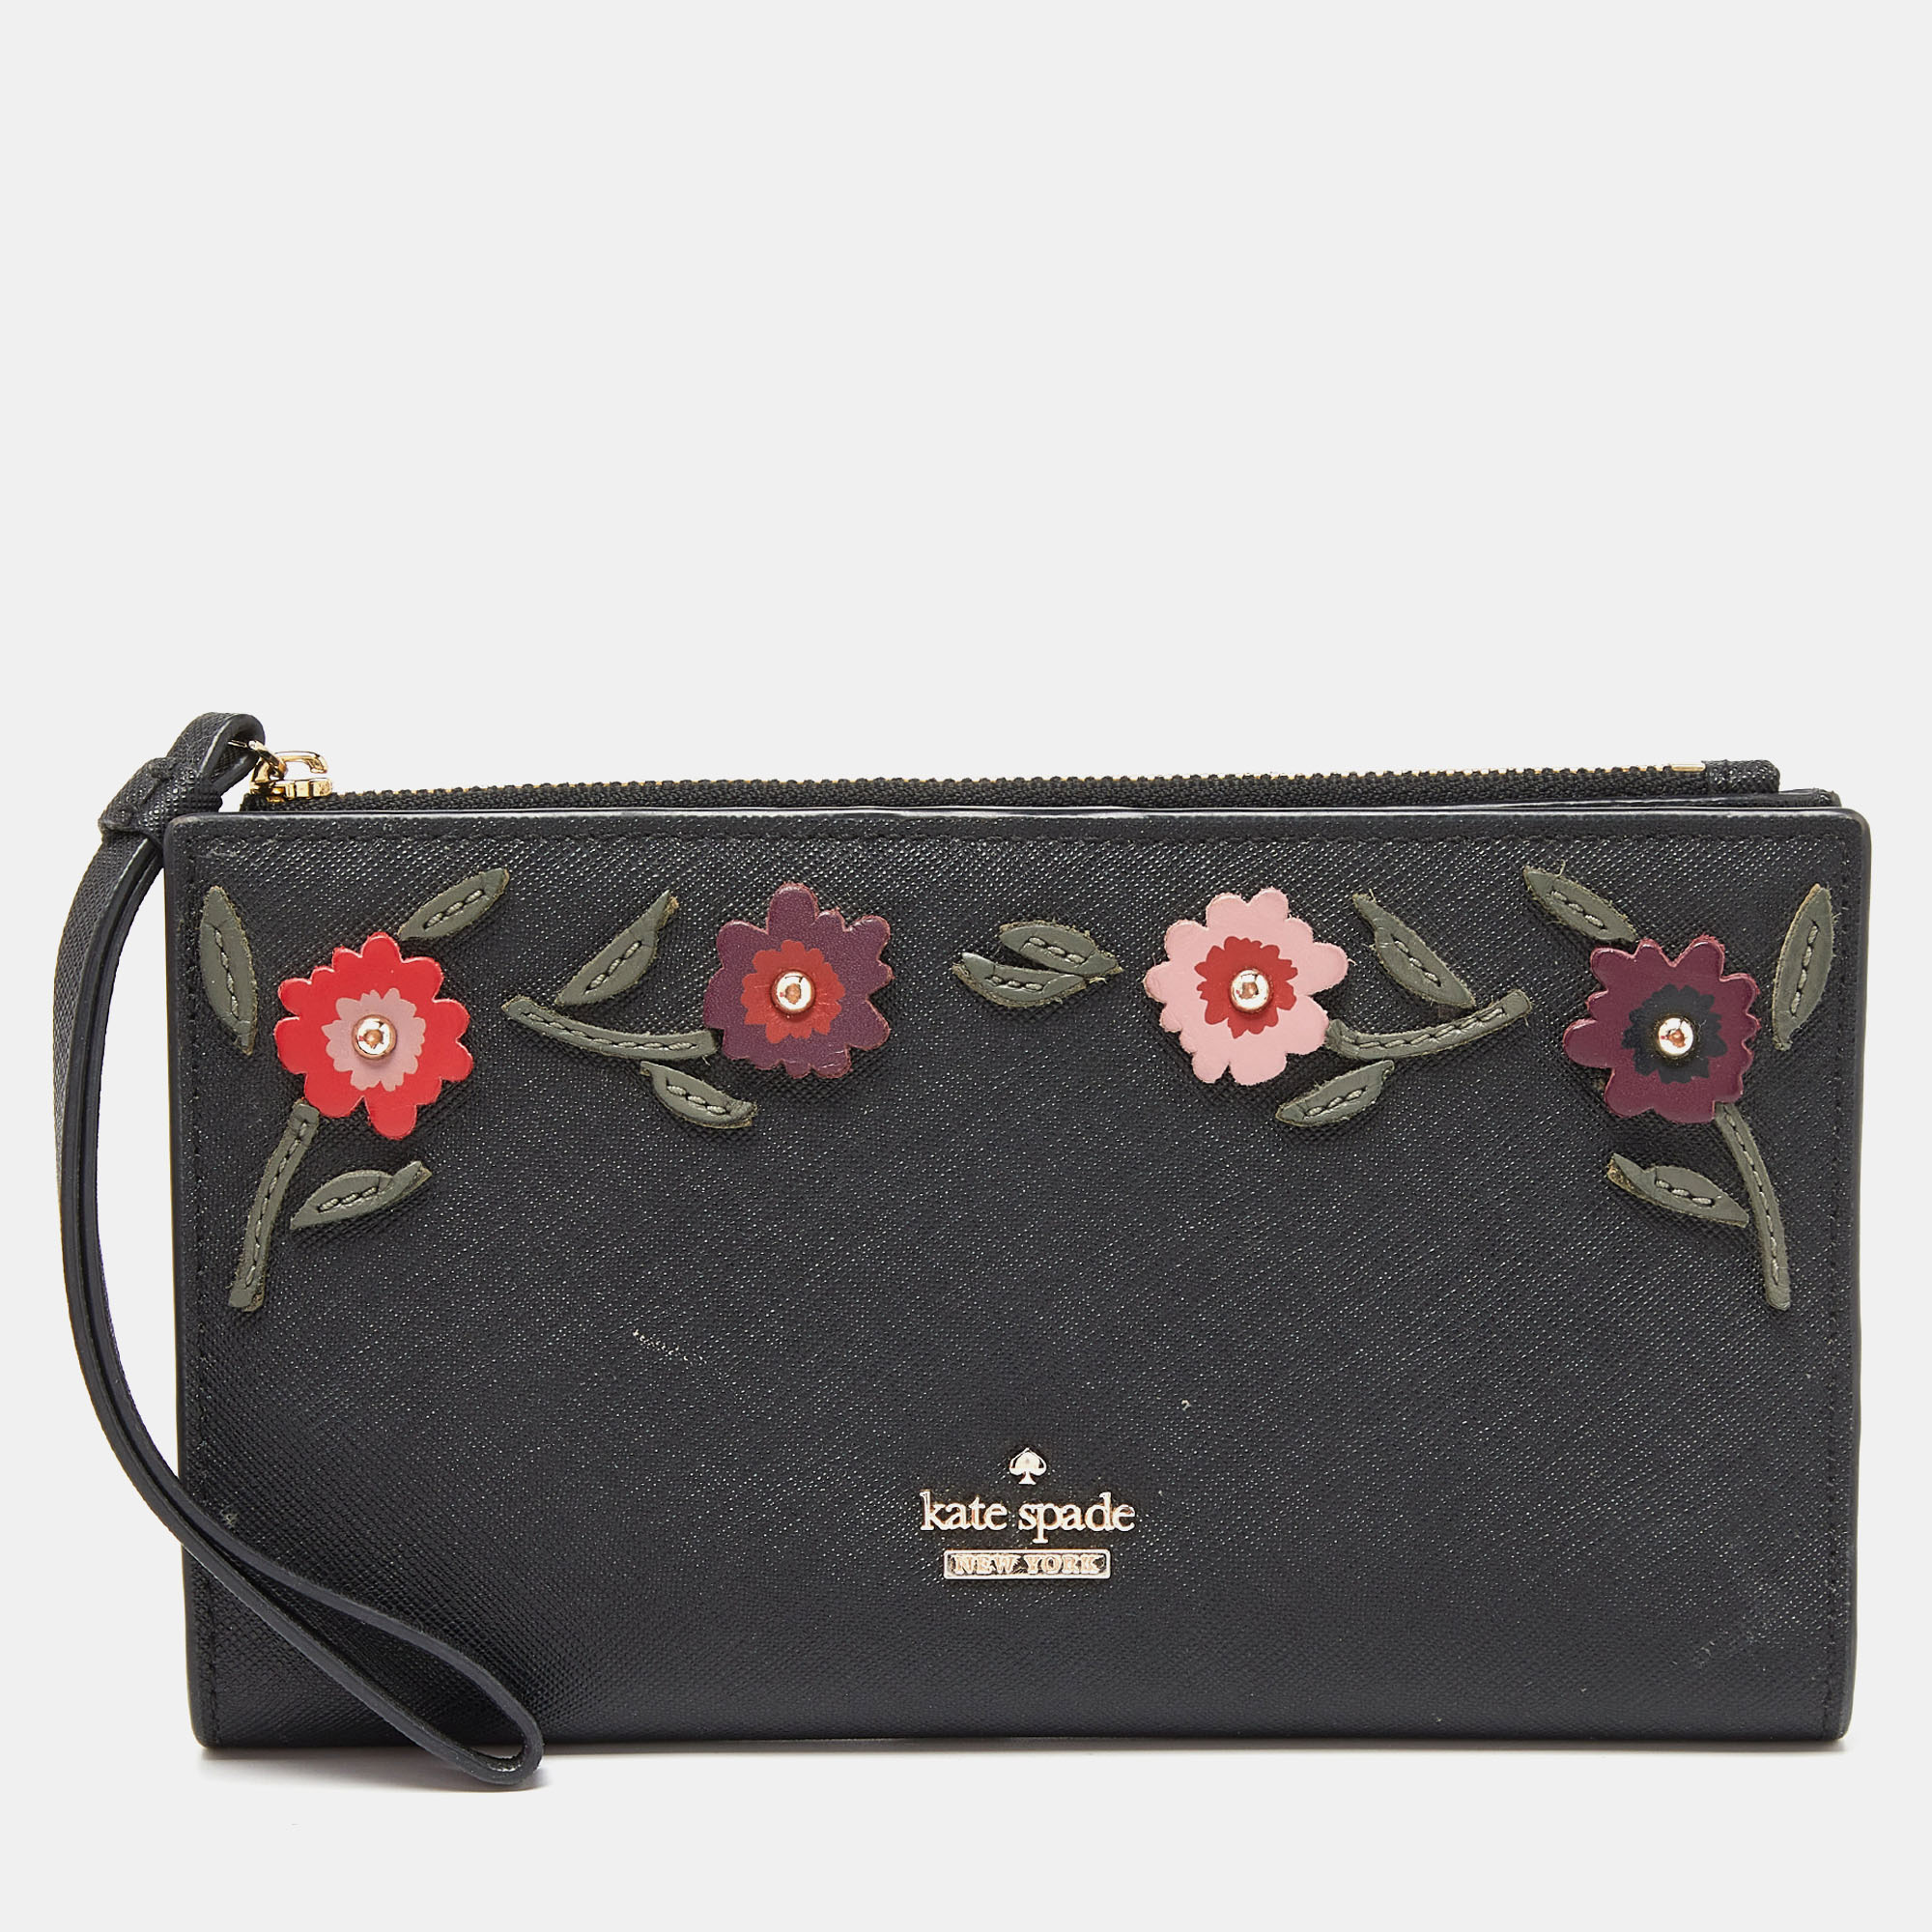 

Kate Spade Black Saffiano Leather Spencer Bifold Wristlet Wallet